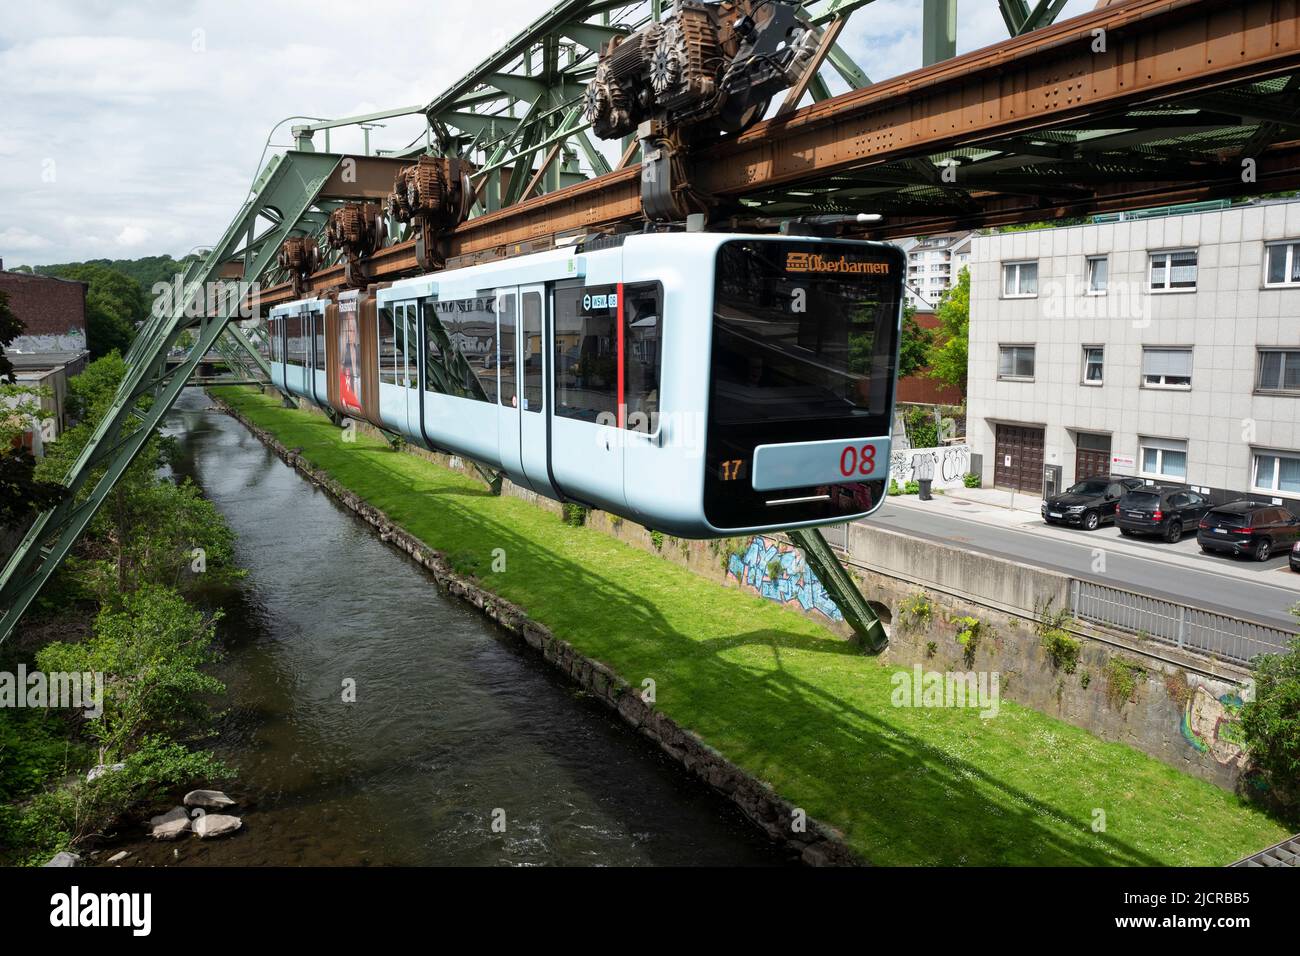 El ferrocarril colgante de Wuppertal sobre el río Wupper, Alemania Foto de stock